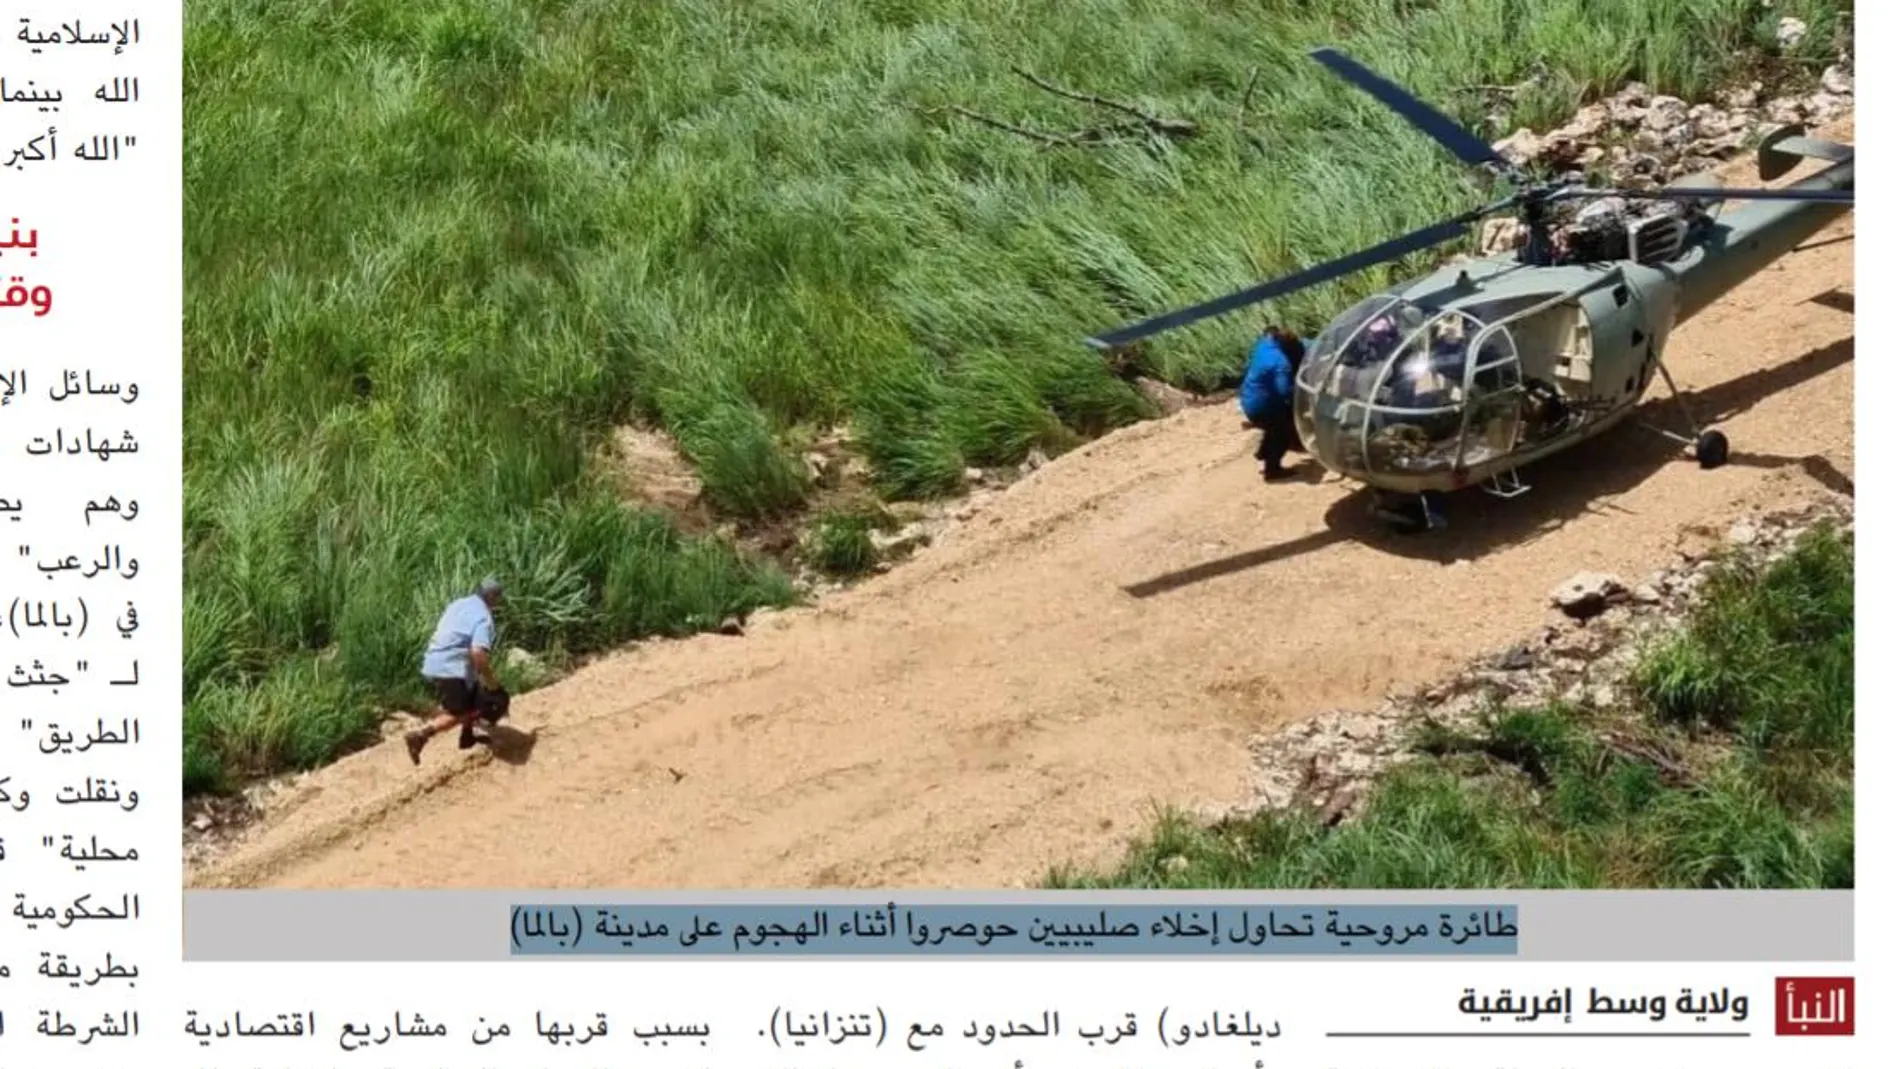 Fotografía publicada por el Estado Islámico de un helicóptero que evacúa occidentales